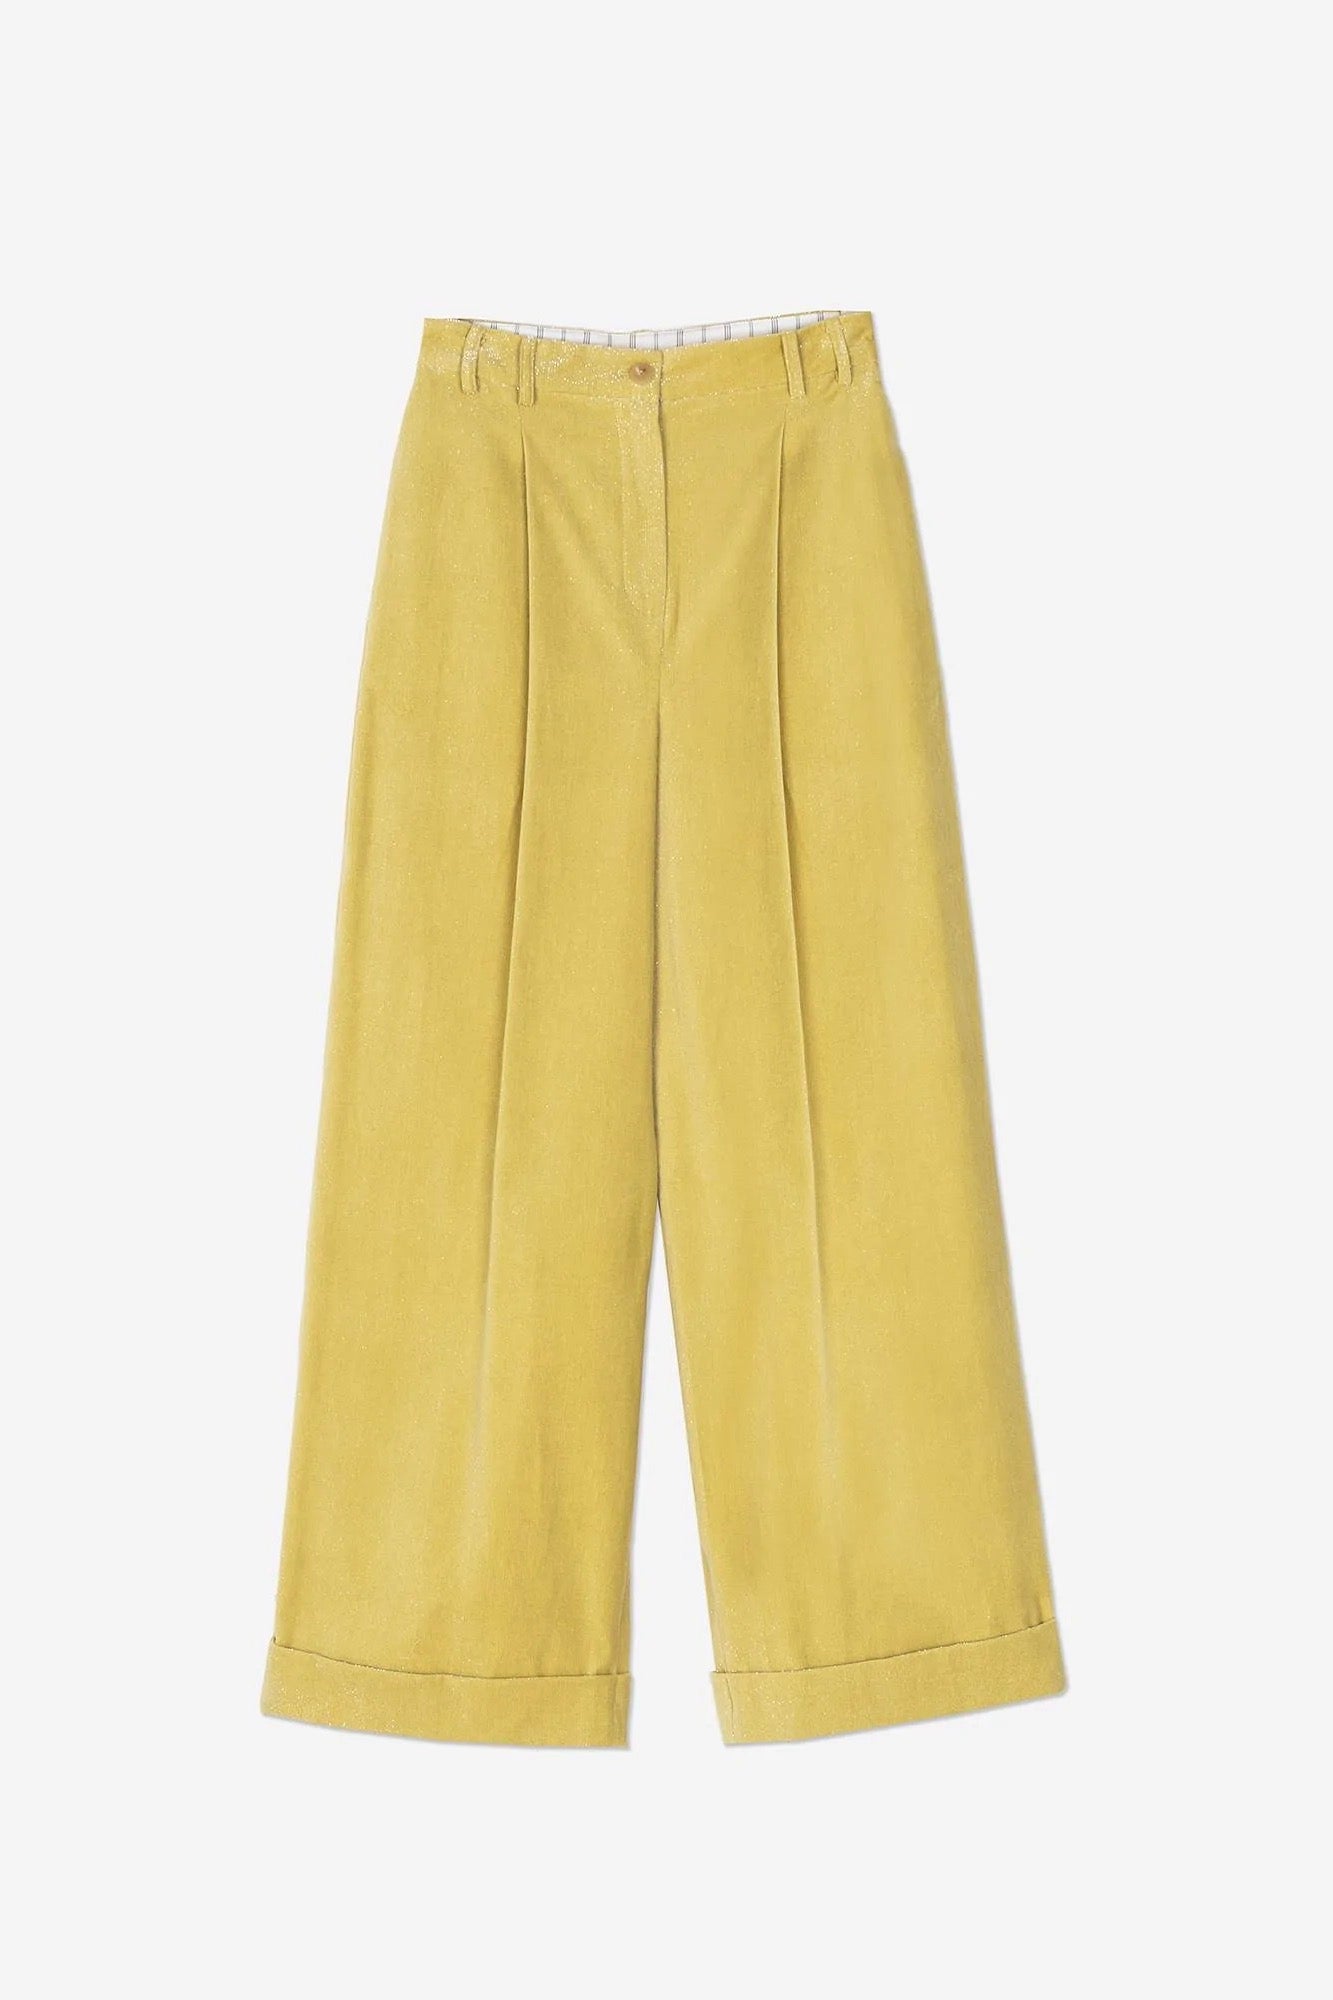 Alysi - Corduroy Sparkle Trousers: Yellow